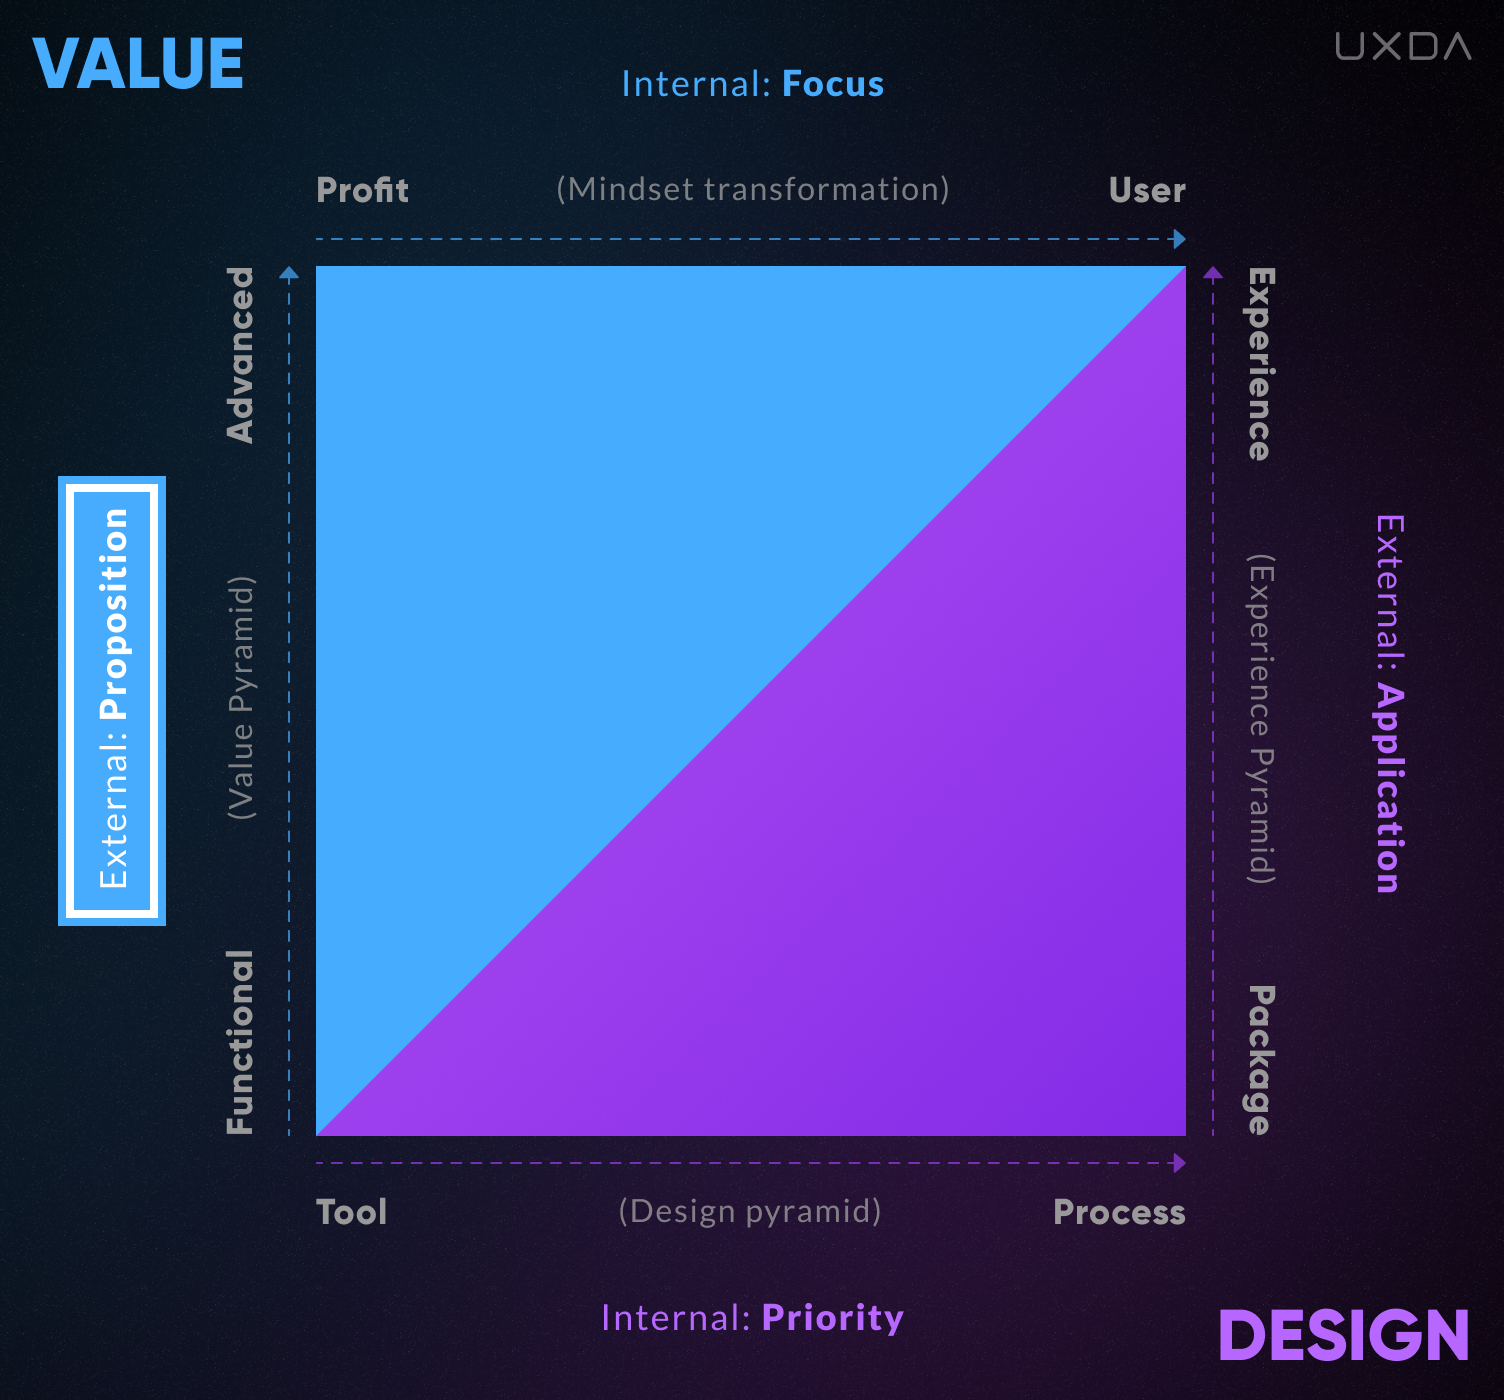 The UX Design Matrix Purpose-Driven Banking Culture Value external proposition